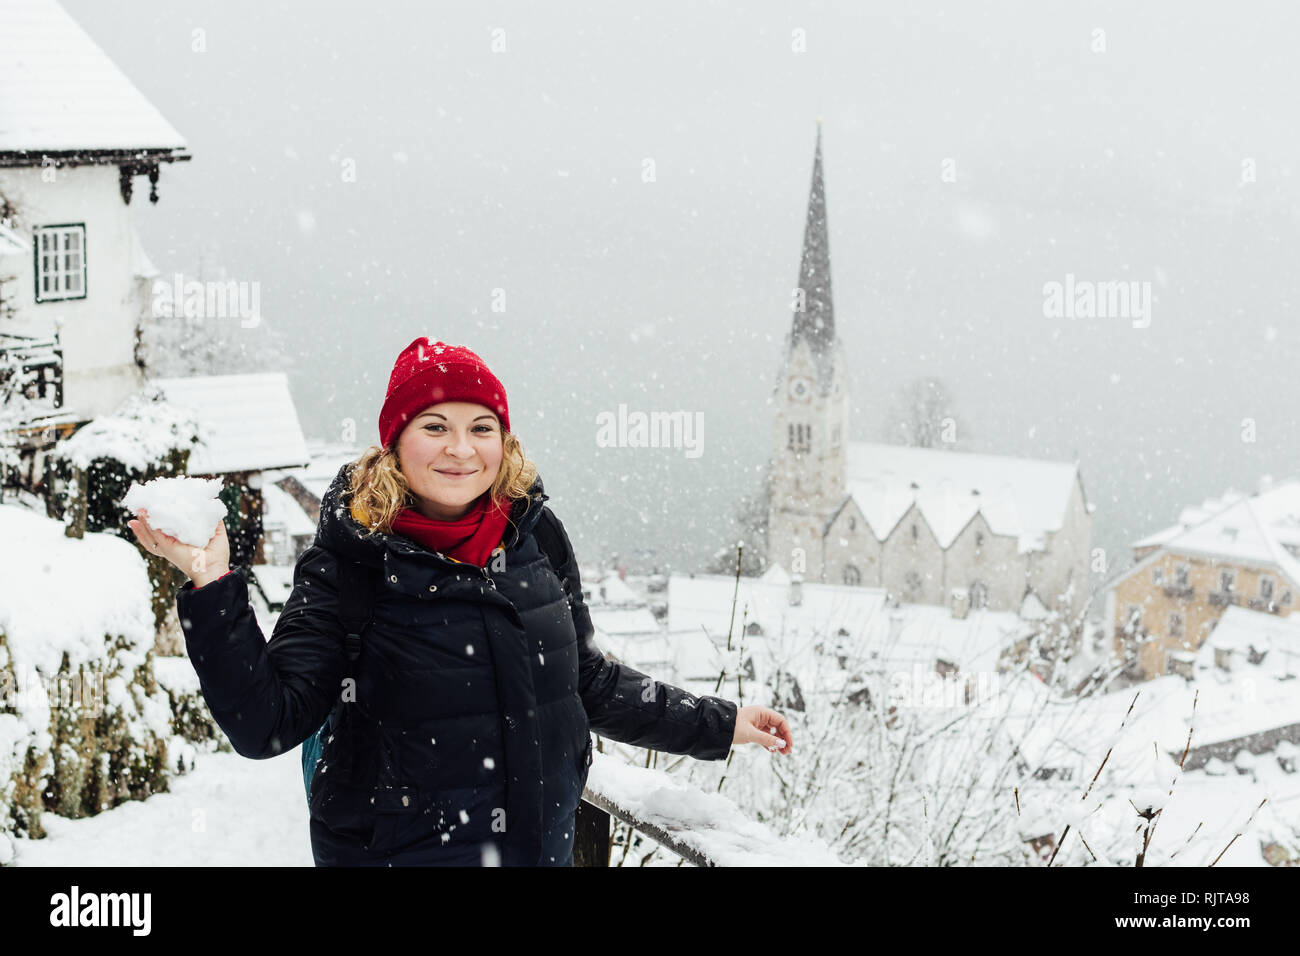 Frau in Red Hat eine Schneeballschlacht in Hallstatt Altstadt während der schneesturm in, Österreich Stockfoto